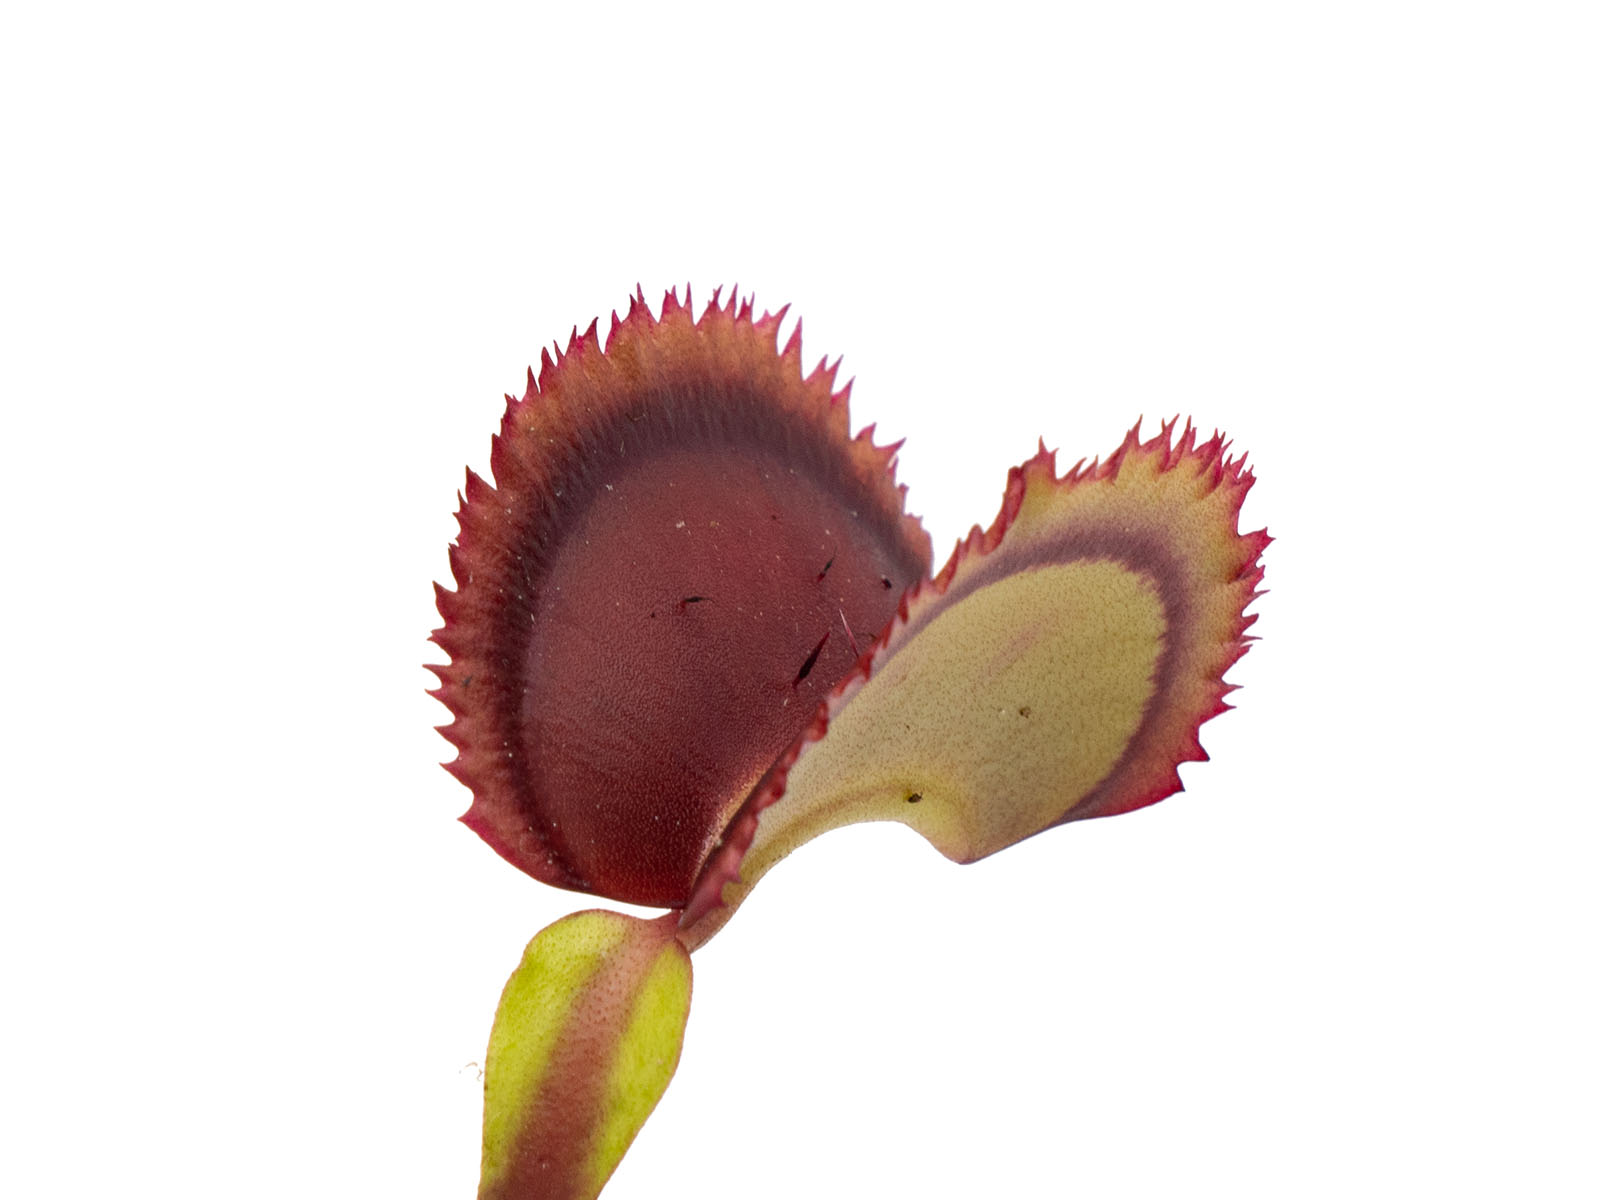 Dionaea muscipula - Giant Clam